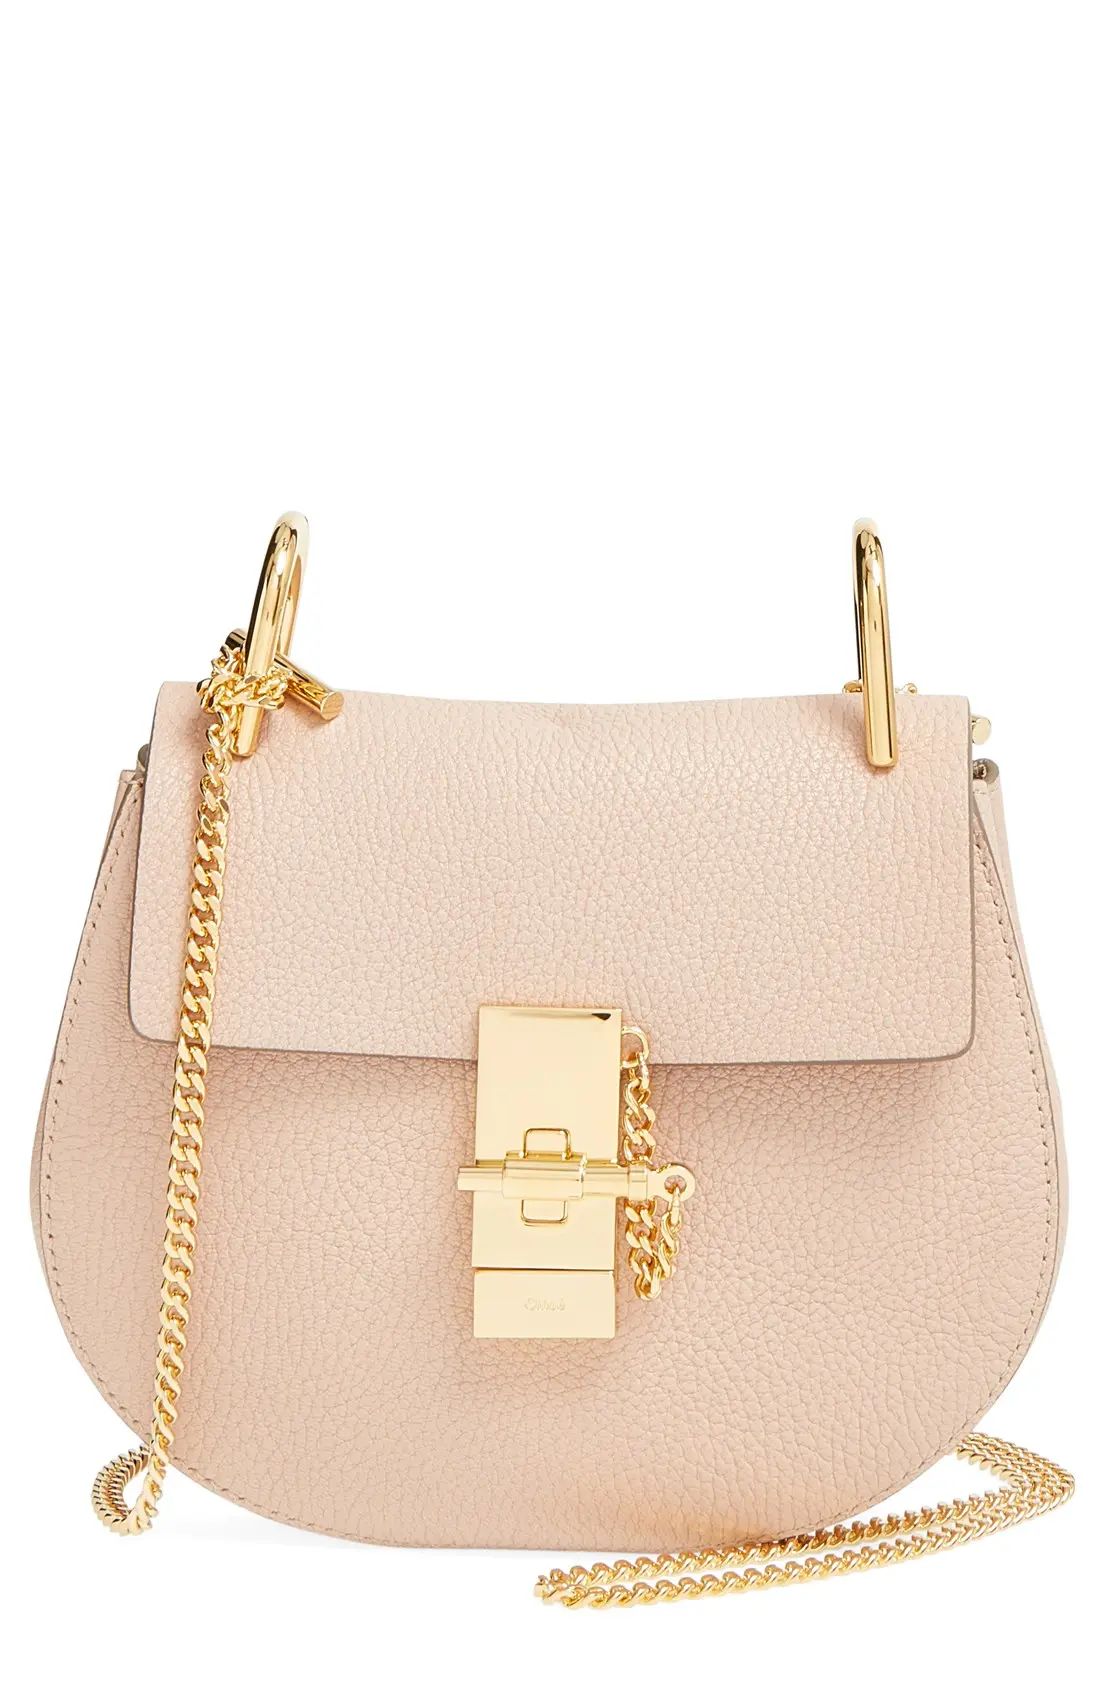 Chloe 'Mini Drew' Leather Shoulder Bag - Pink | Nordstrom